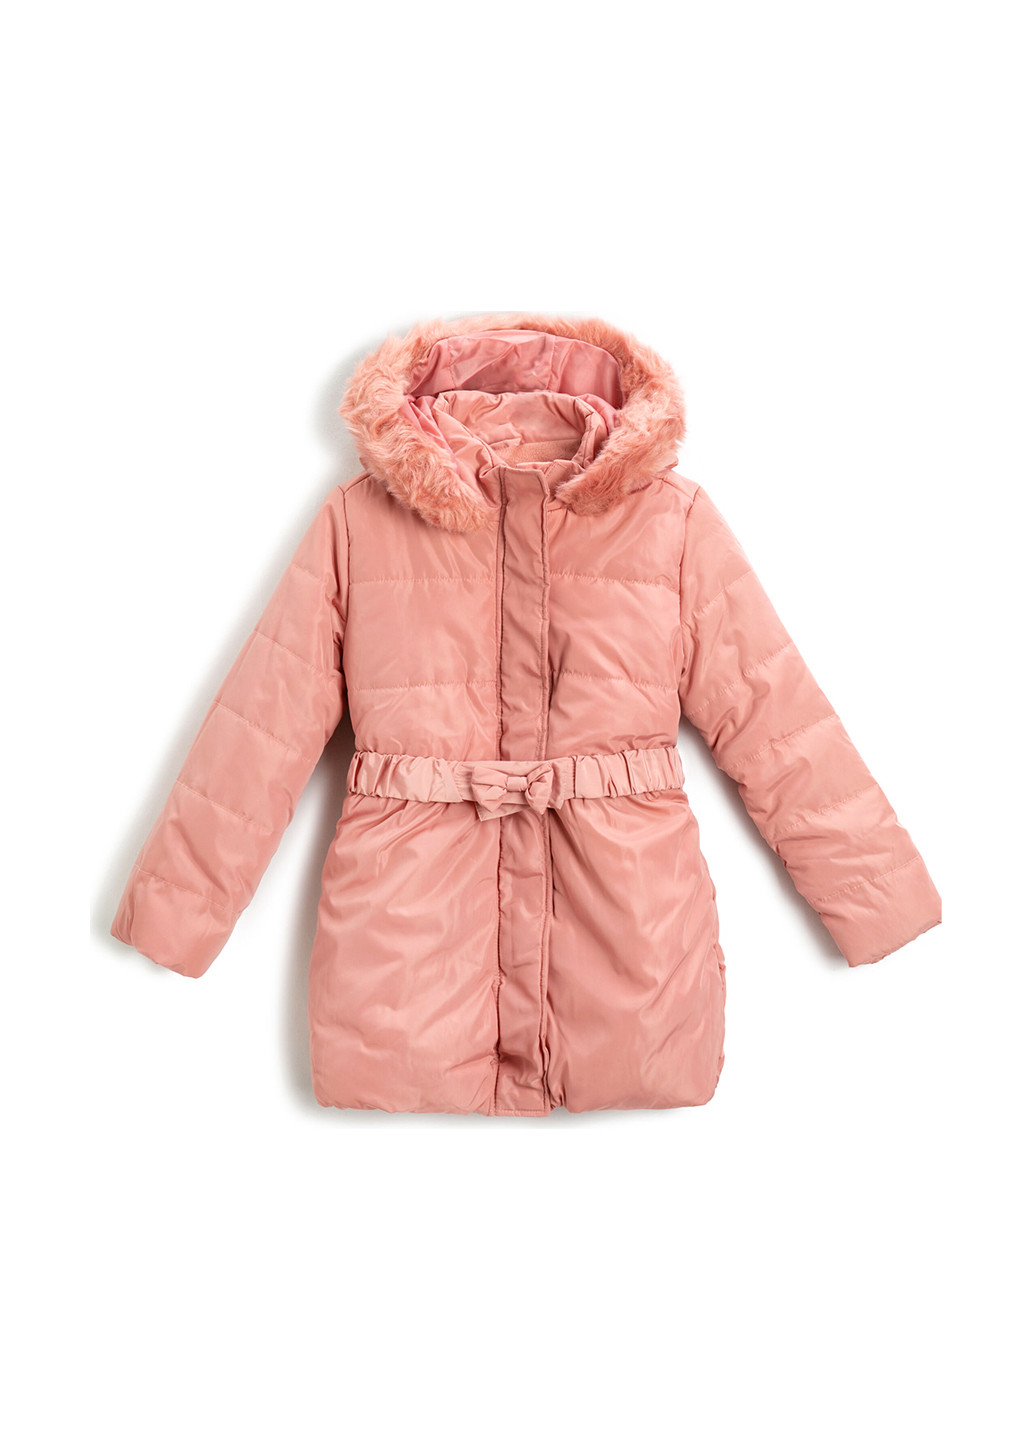 Розовая демисезонная куртка куртка-пальто KOTON